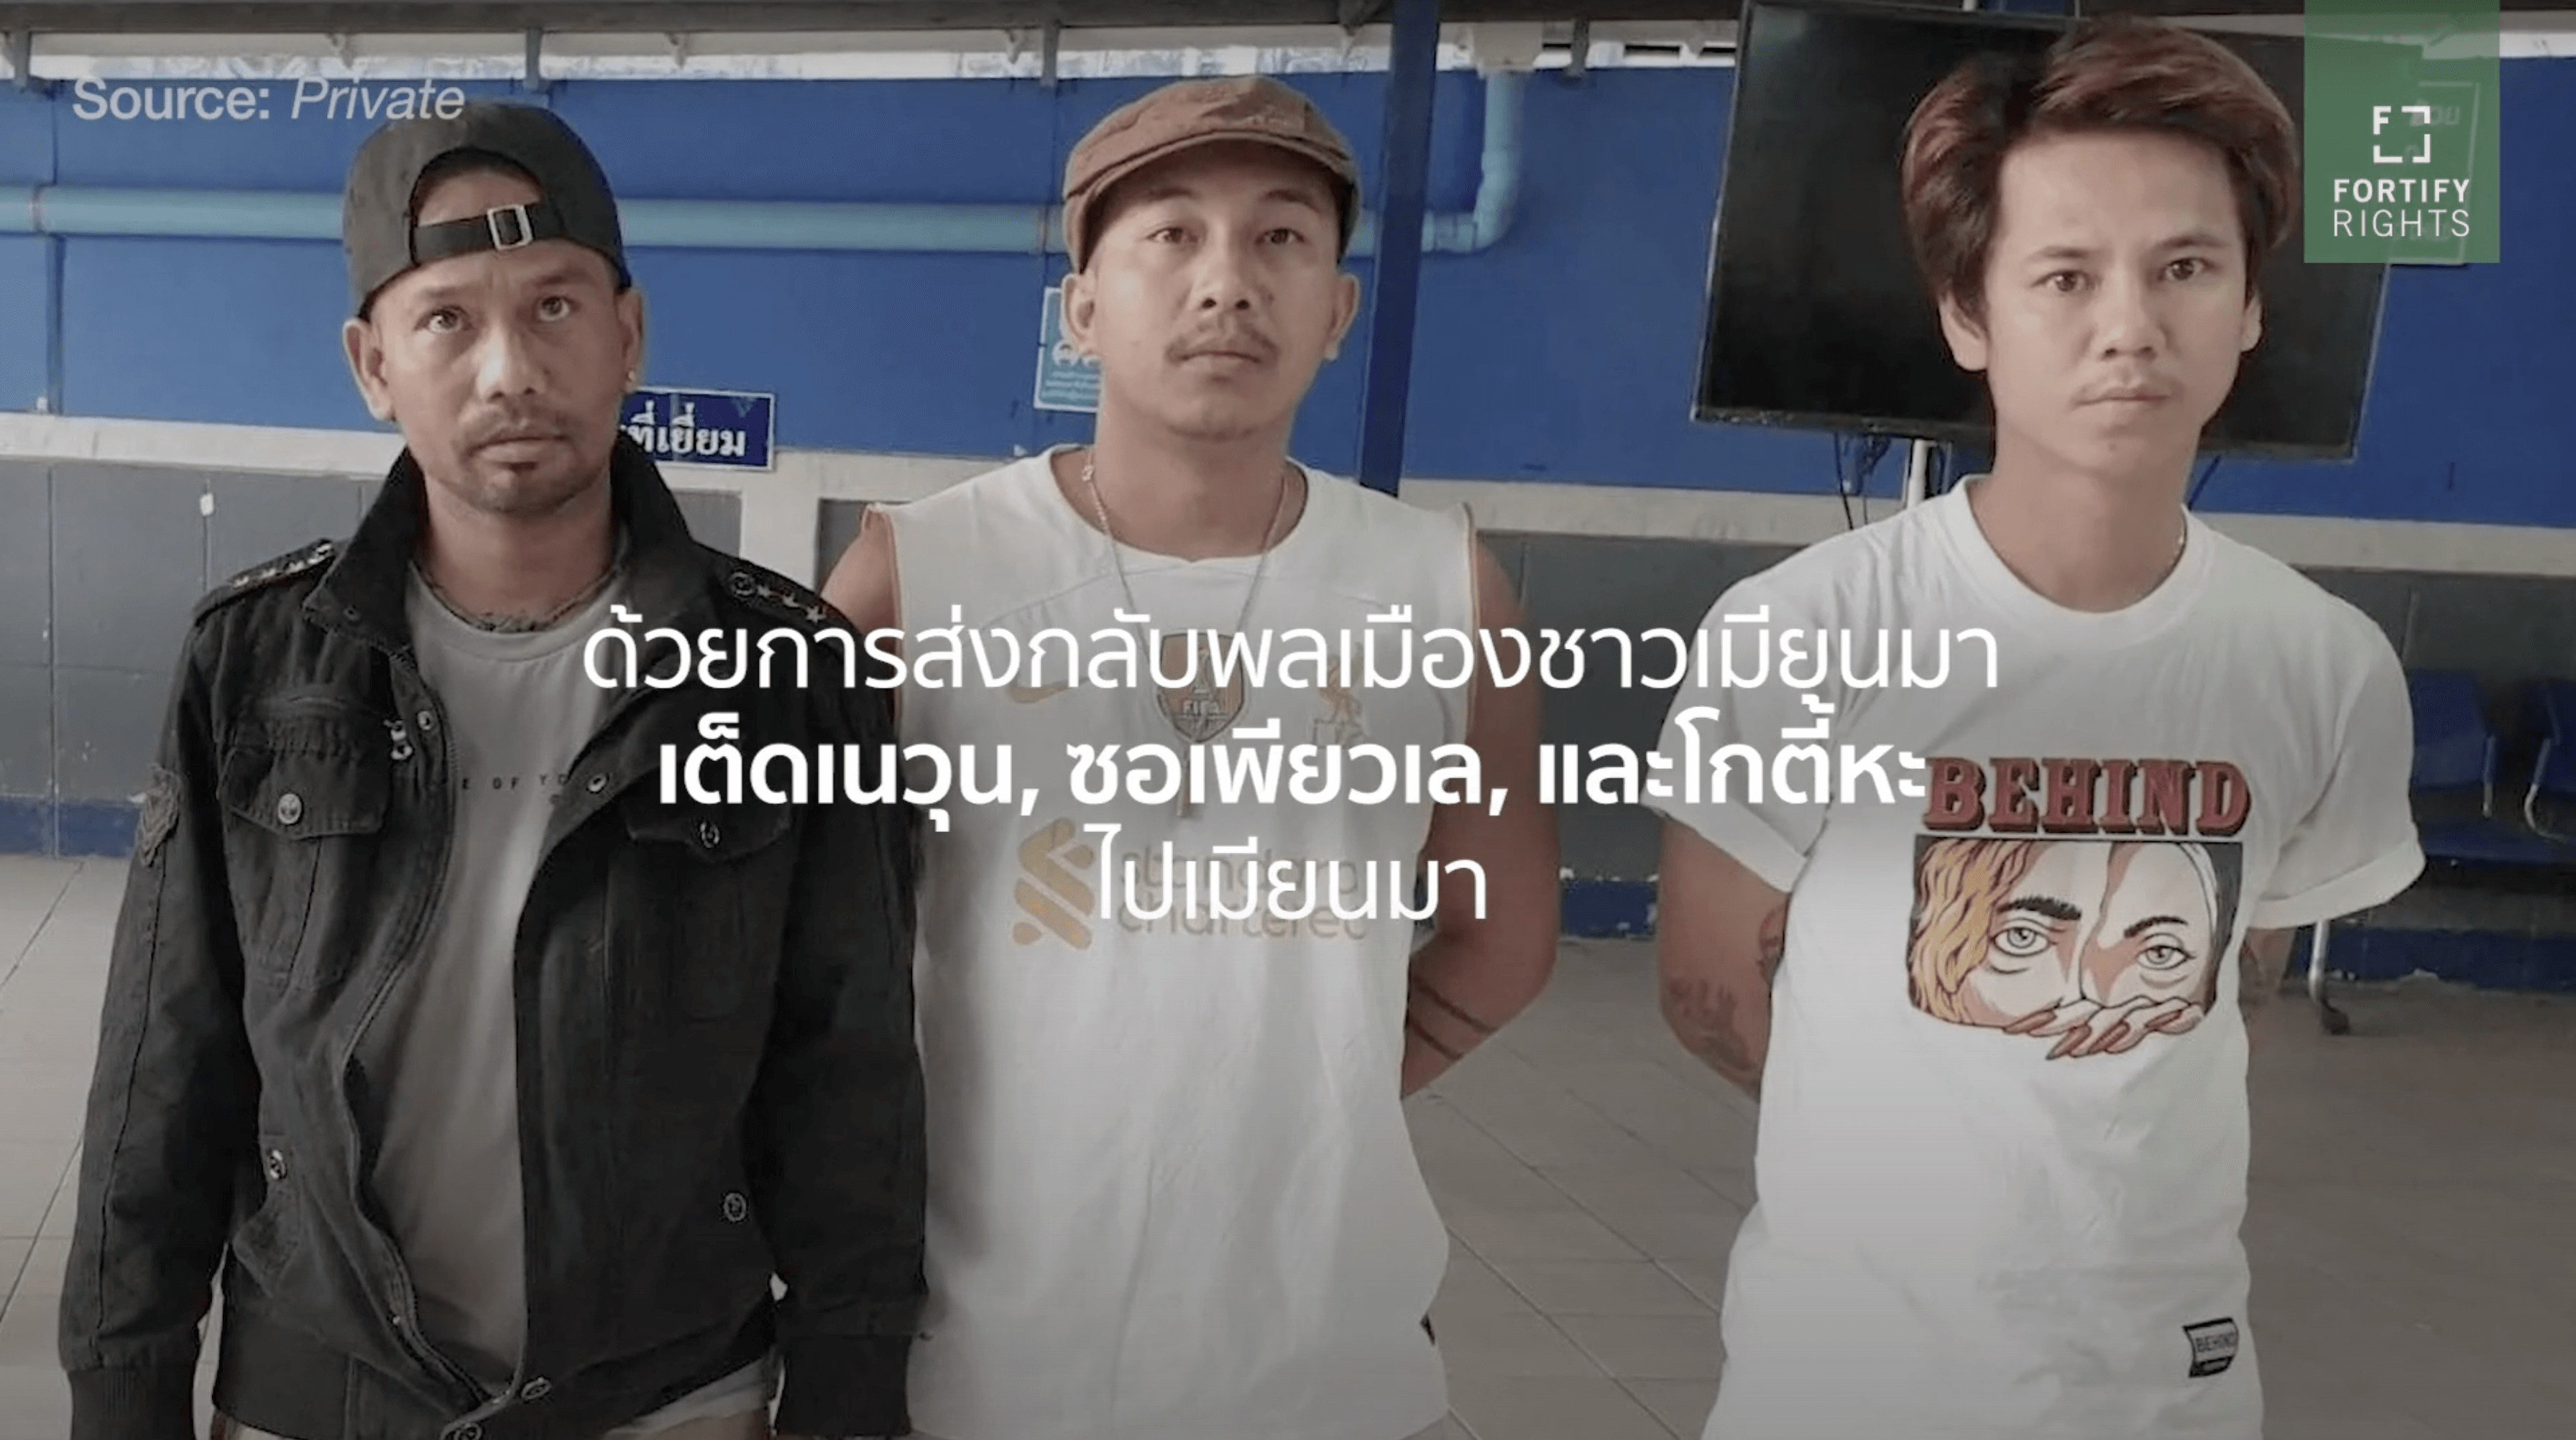 มีรายงานว่าชายสามคนถูกทางการไทยส่งตัวกลับไปเมียนมา และเกรงว่าอาจถูกควบคุมตัว